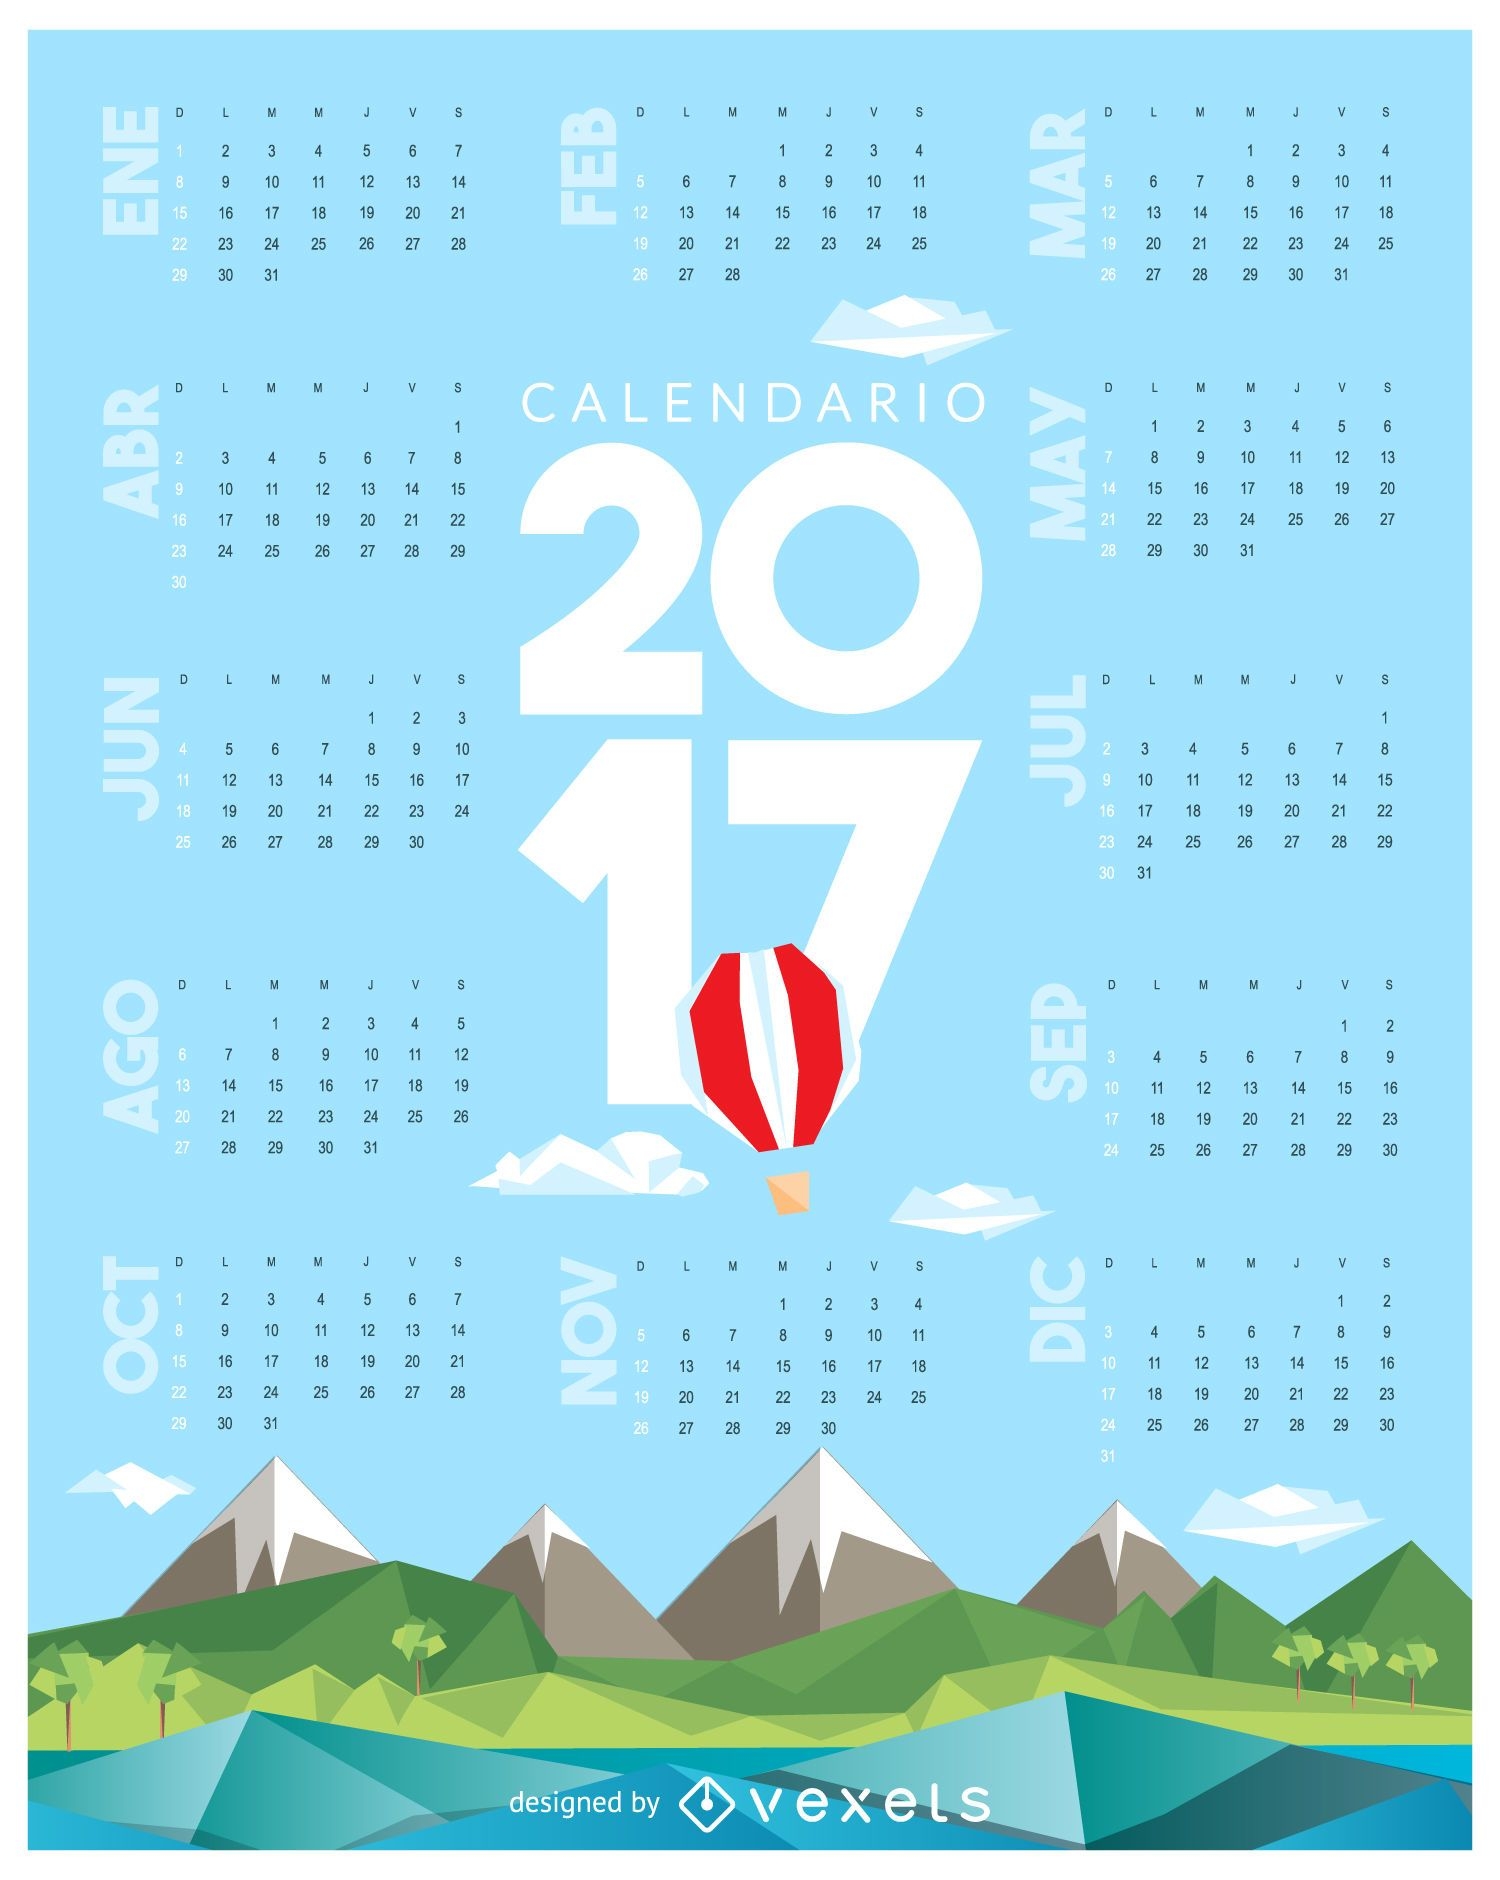 Calendario 2017 low poly en espa?ol